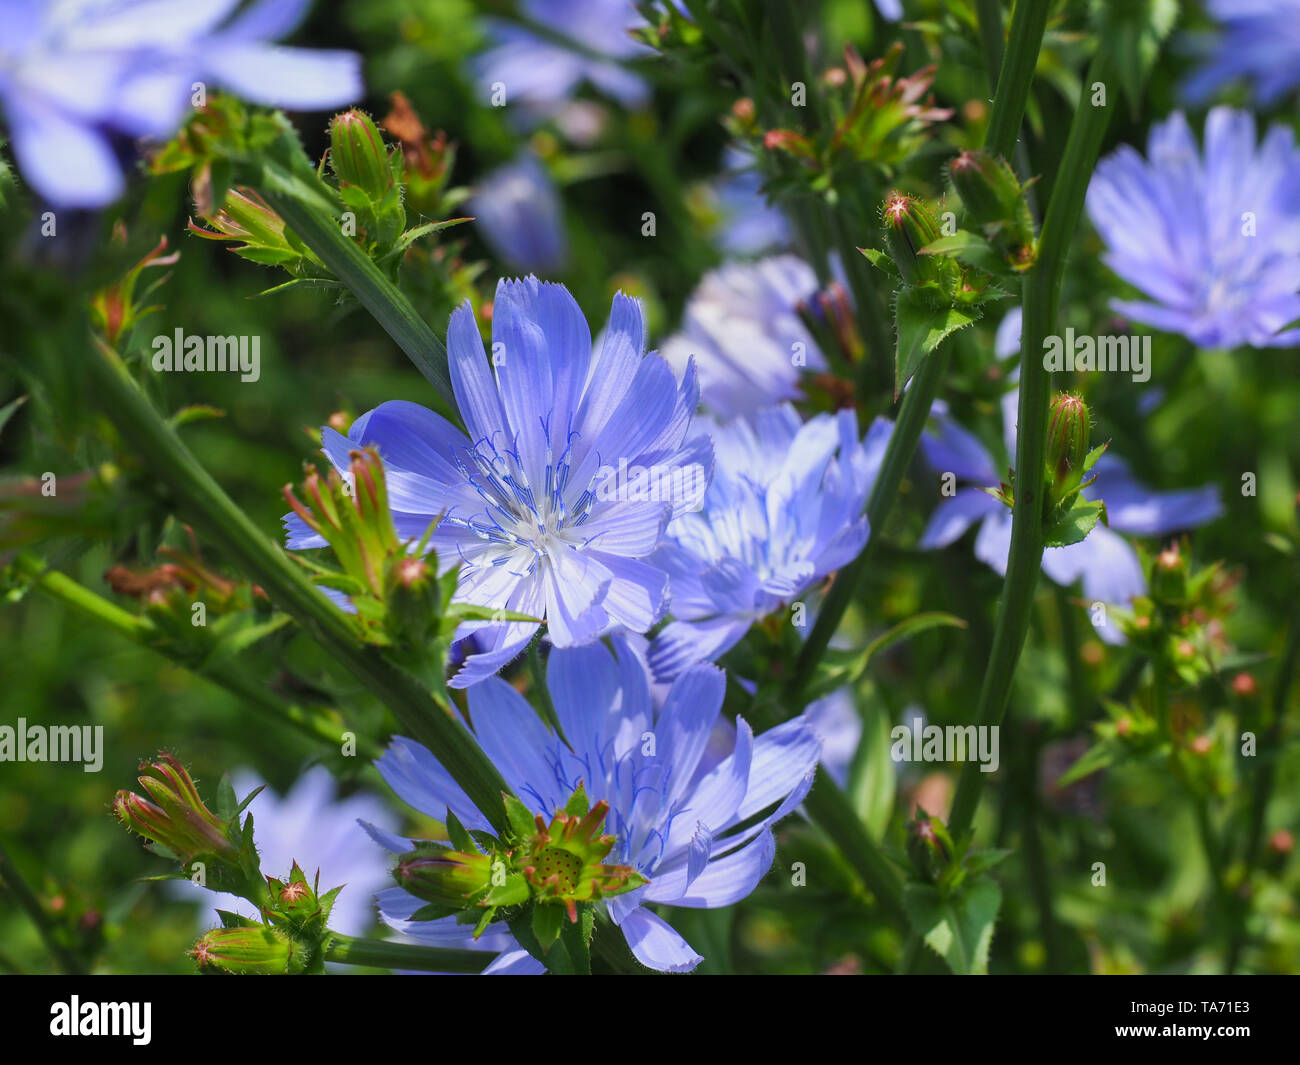 Chicorée Cichorium intybus ou commune de fleurs bleu, communément appelé marins comestibles, café de chicorée, succory de mauvaises herbes est une plante vivace herbacée Banque D'Images